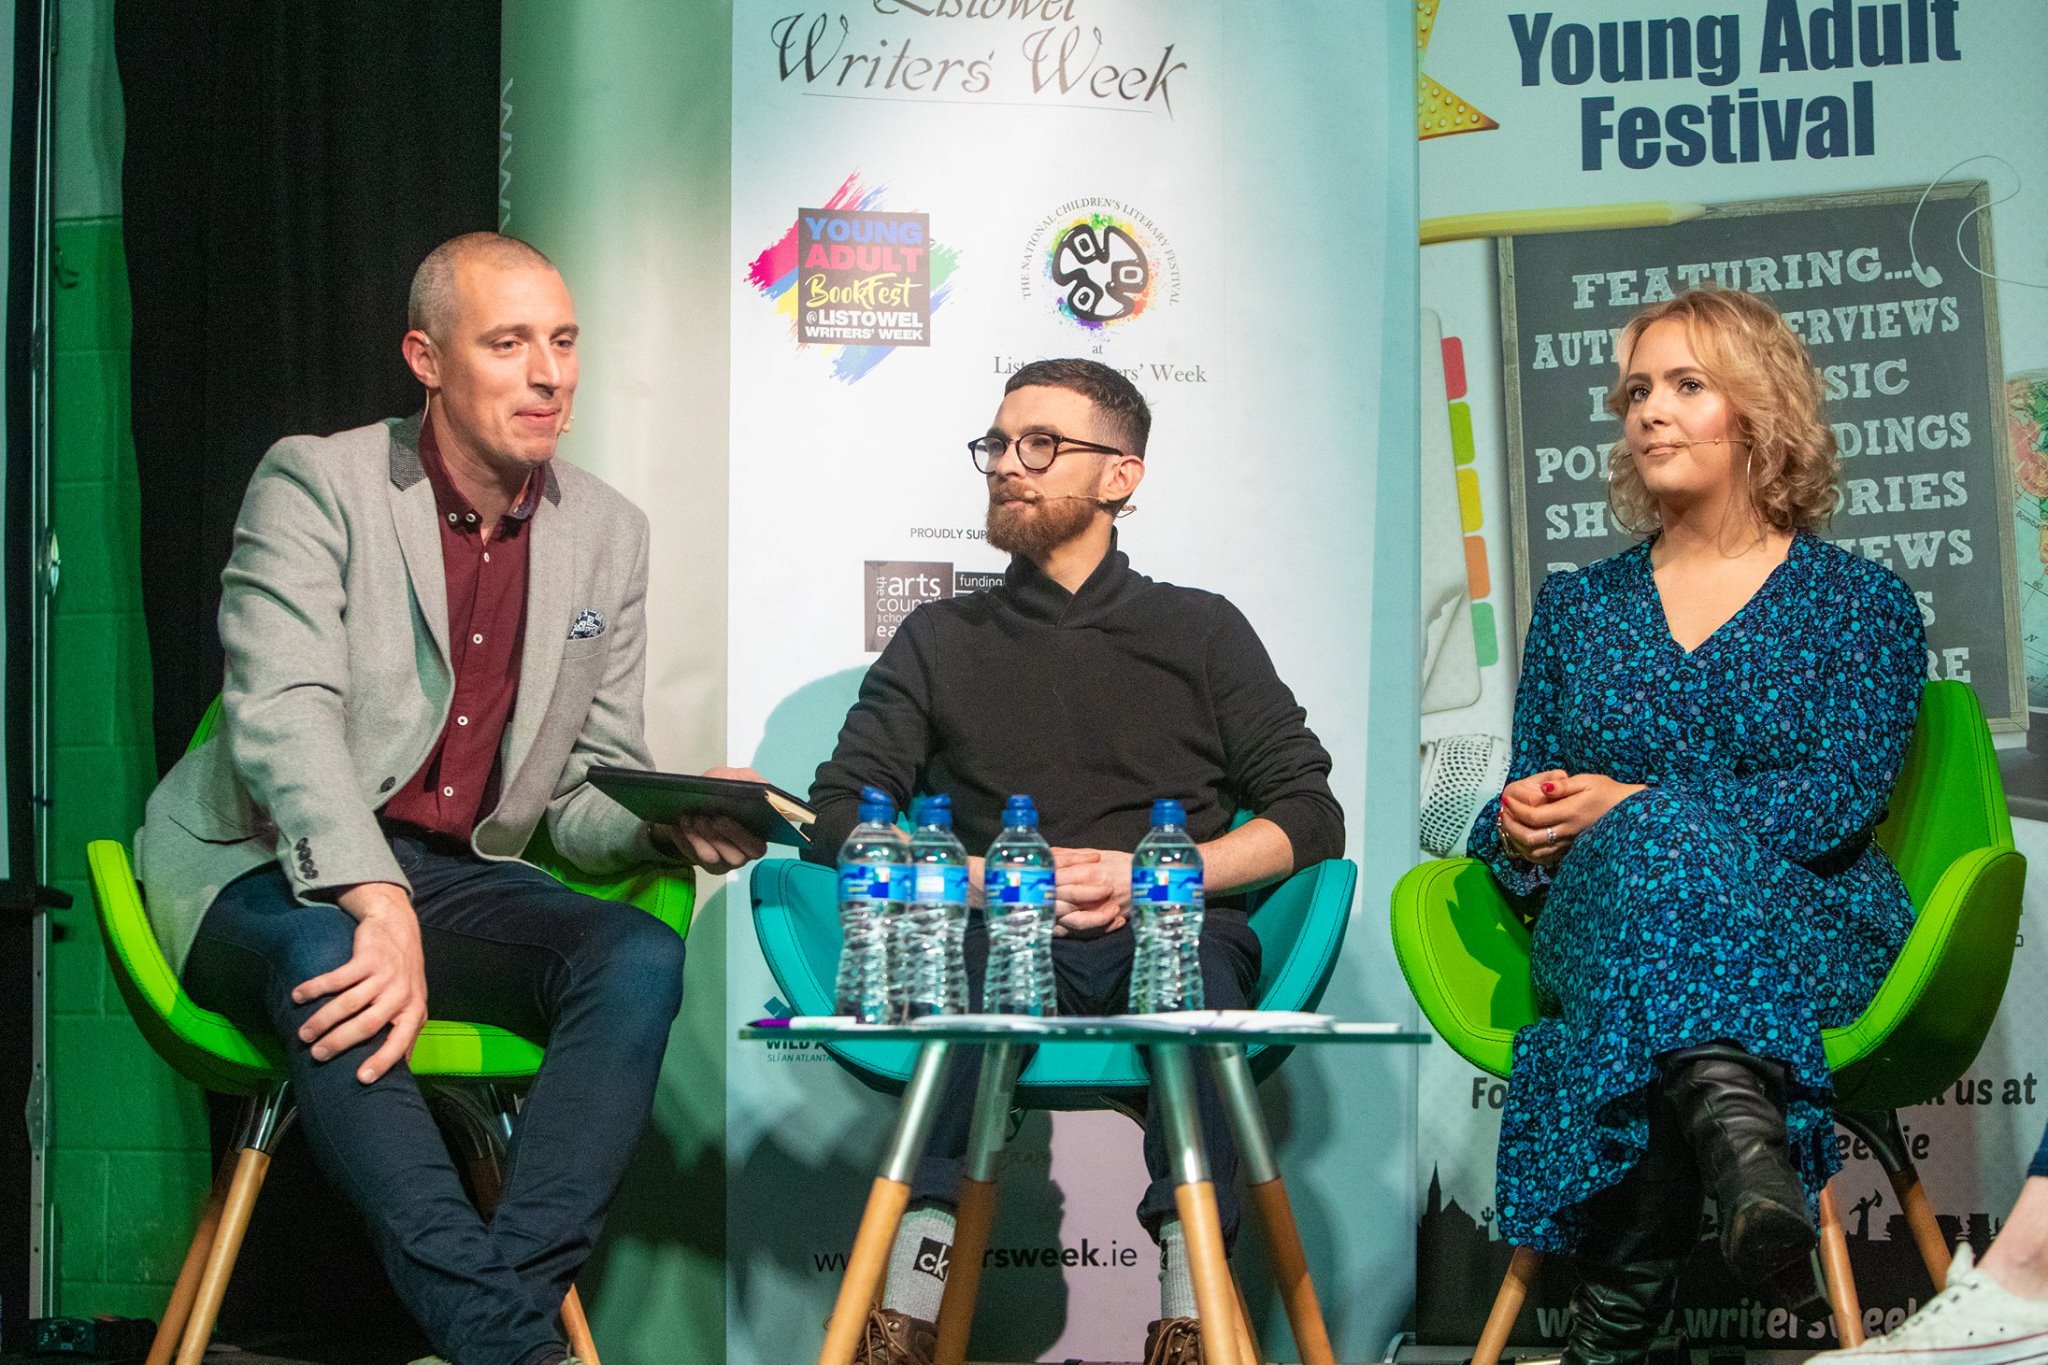 Kieran Donaghy, Paddy Smyth and Edaein O'Connell YABF 2018